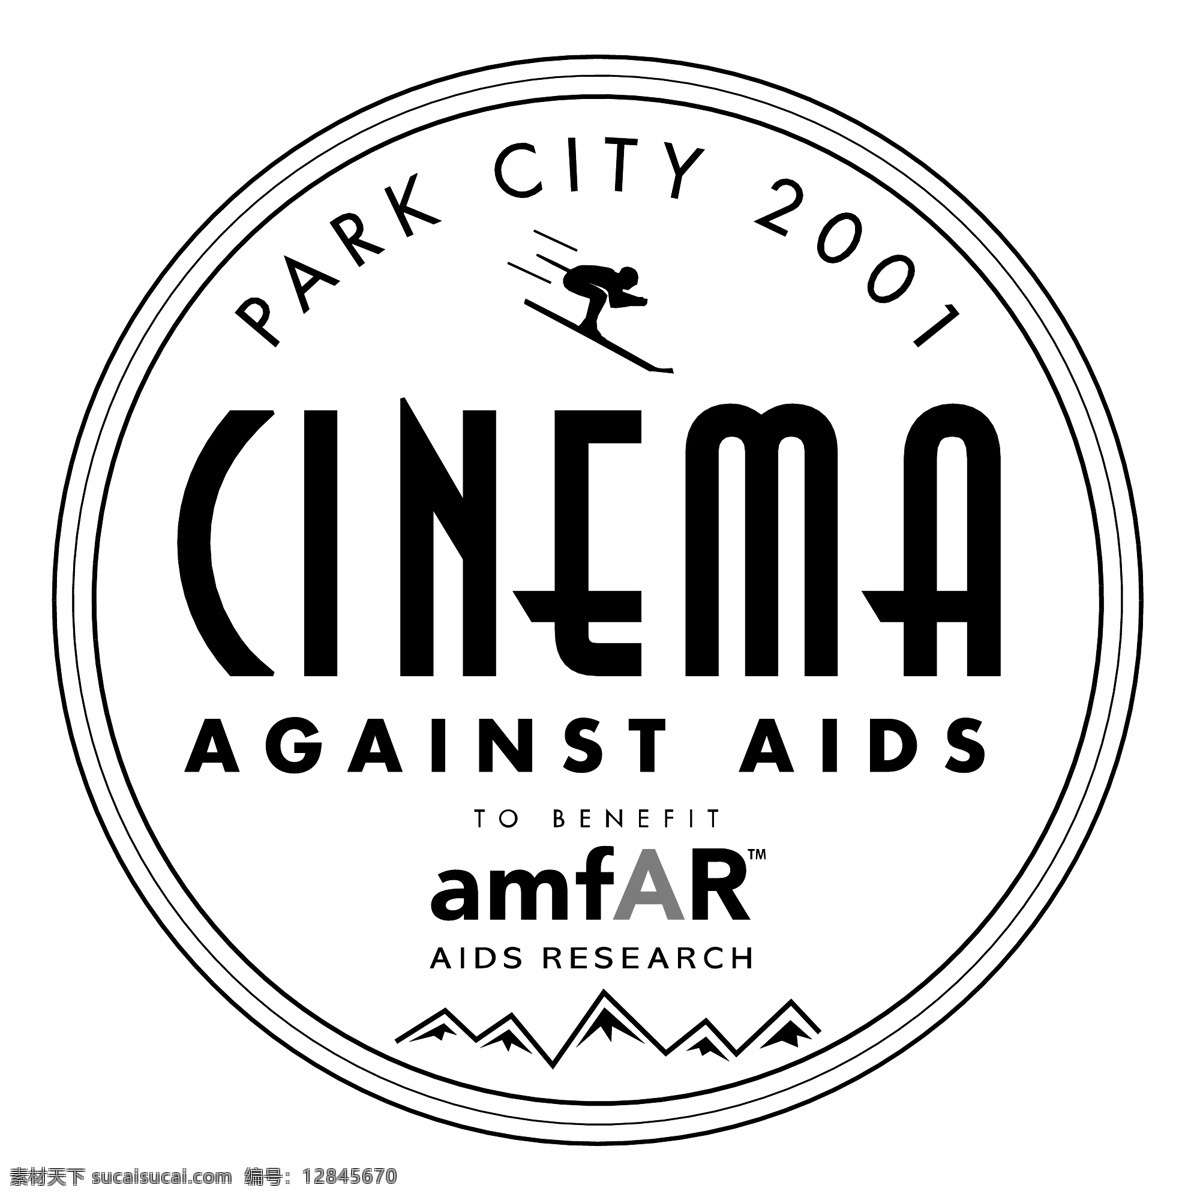 电影 对抗 艾滋病 54 标识 公司 免费 品牌 品牌标识 商标 矢量标志下载 免费矢量标识 矢量 psd源文件 logo设计